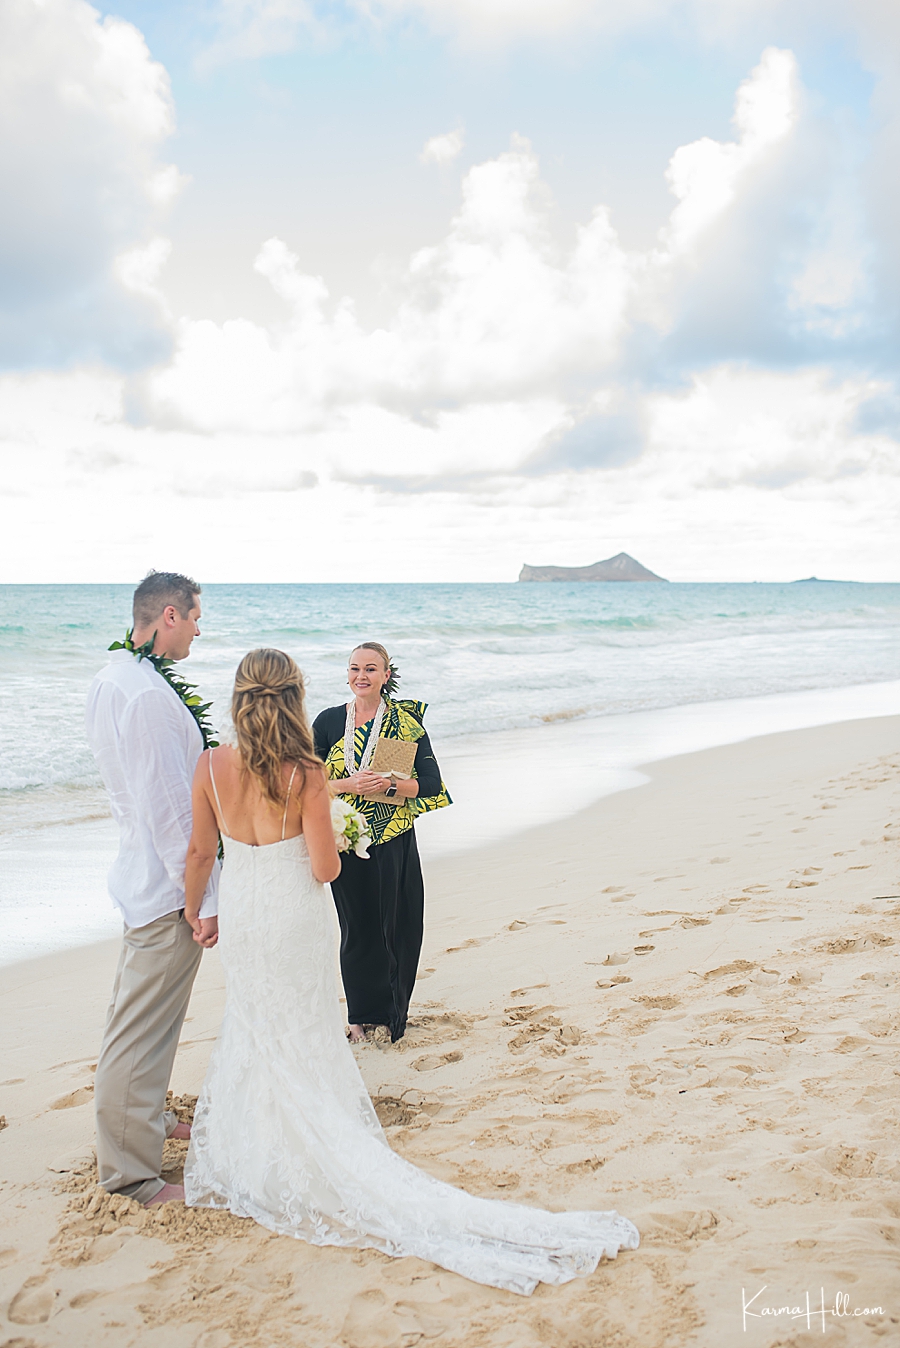 Wedding officiants Oahu Hawaii
